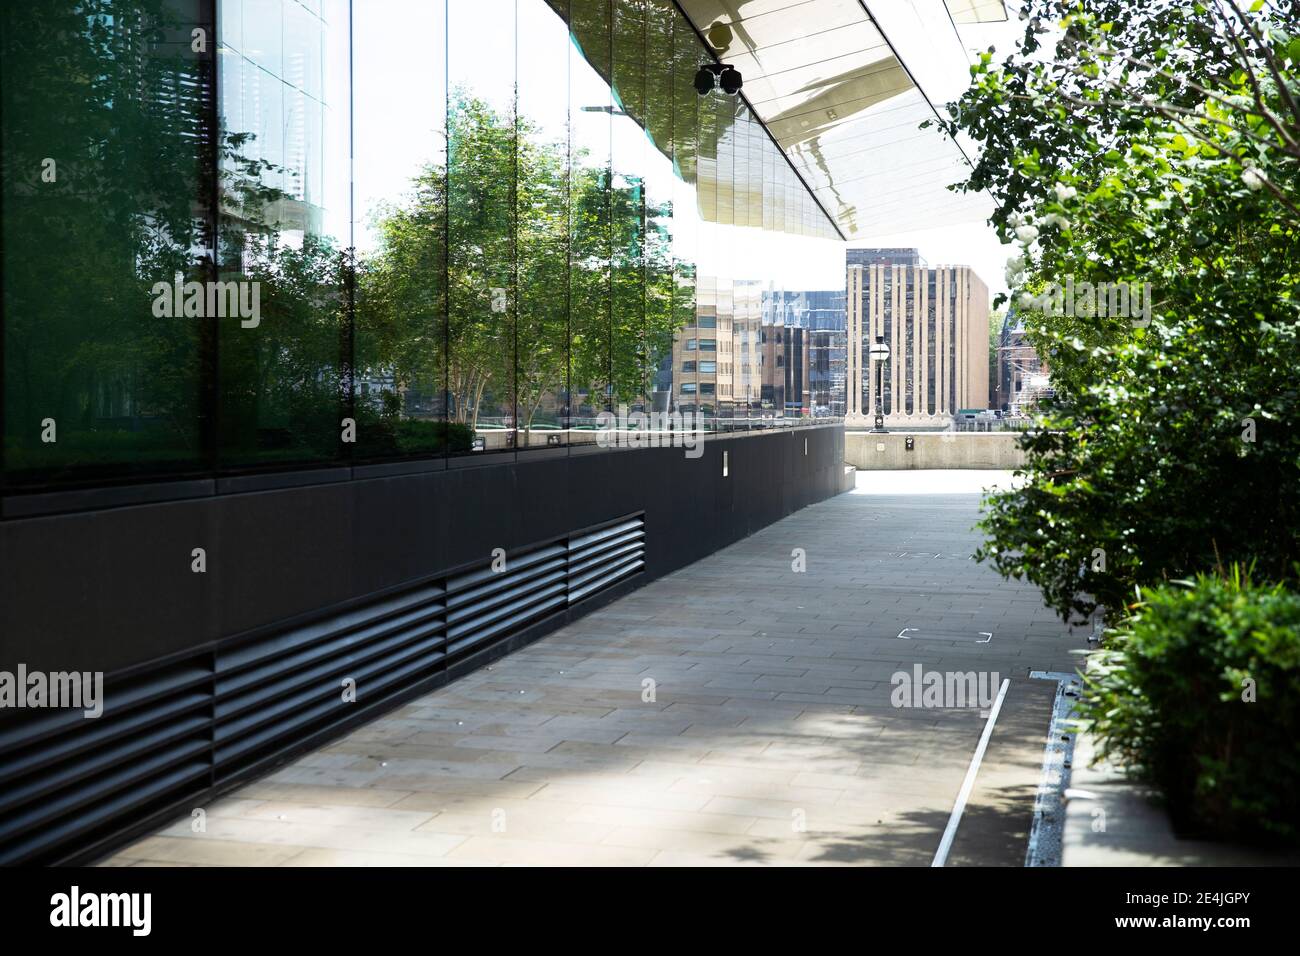 Reino Unido, Inglaterra, Londres, árbol que refleja en la pared del edificio de cristal Foto de stock